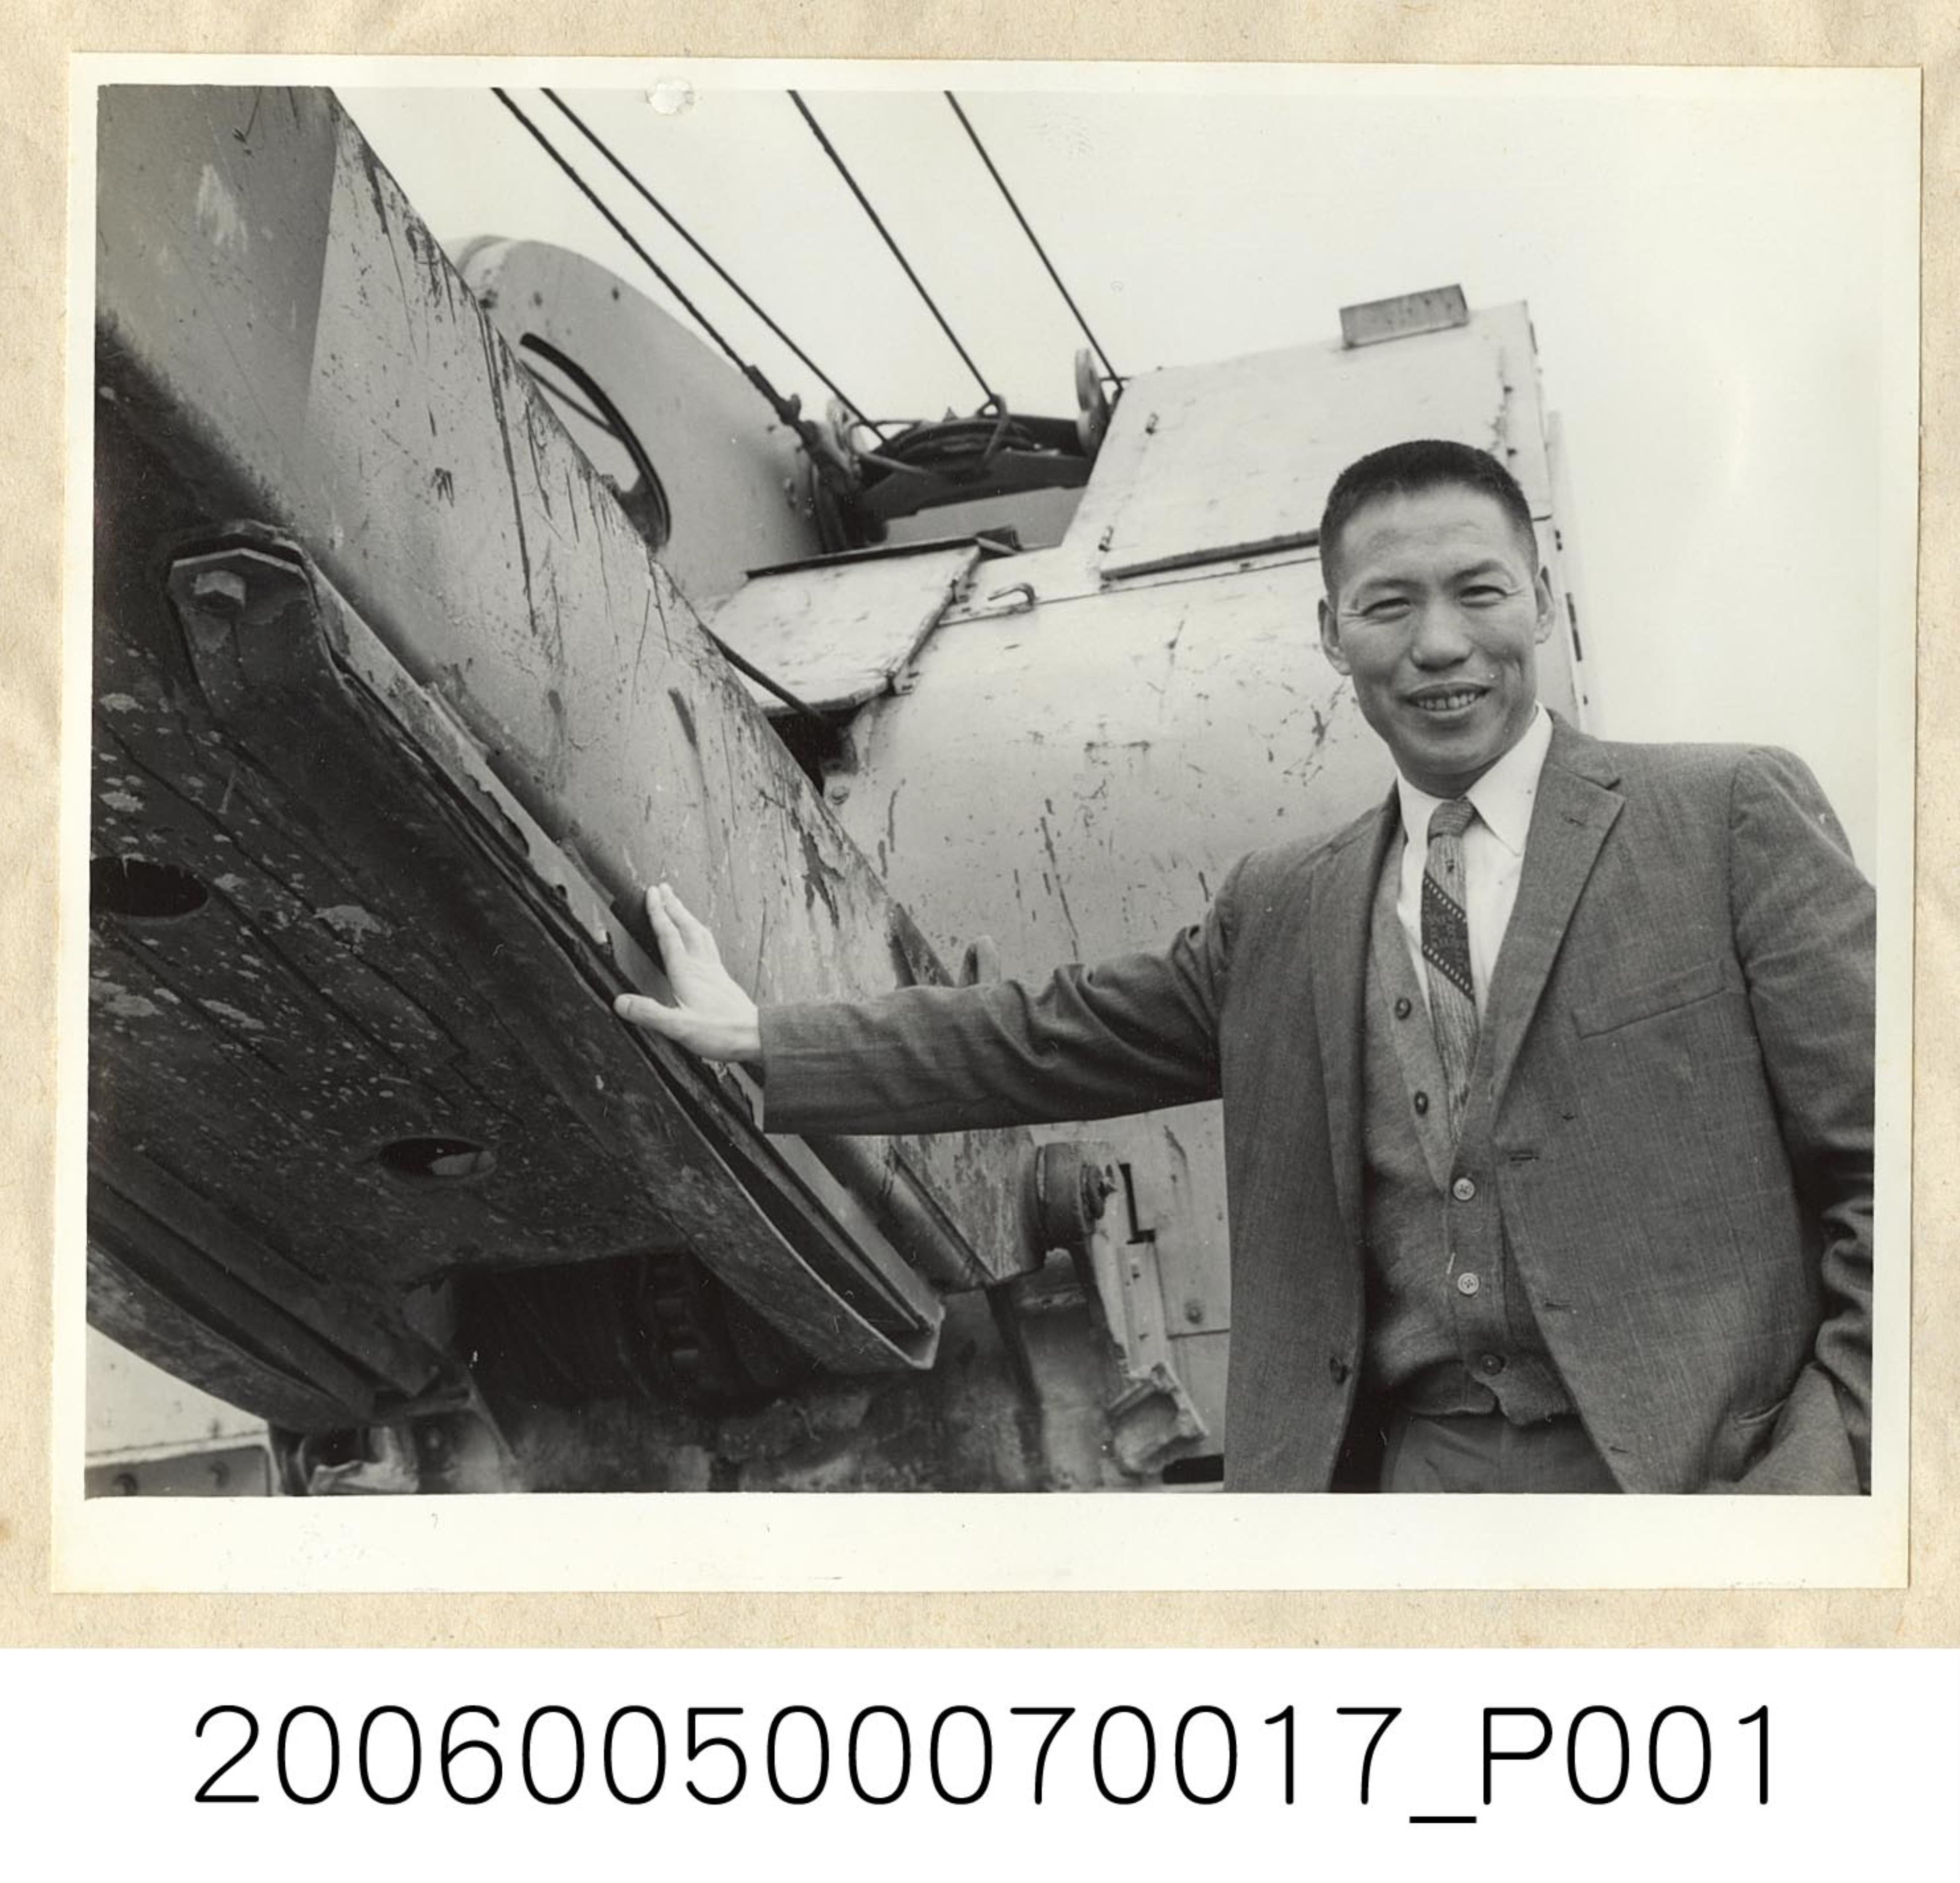 《華僑通訊社新聞照片集》〈葛永飛在工地重機械前留影〉 (共1張)